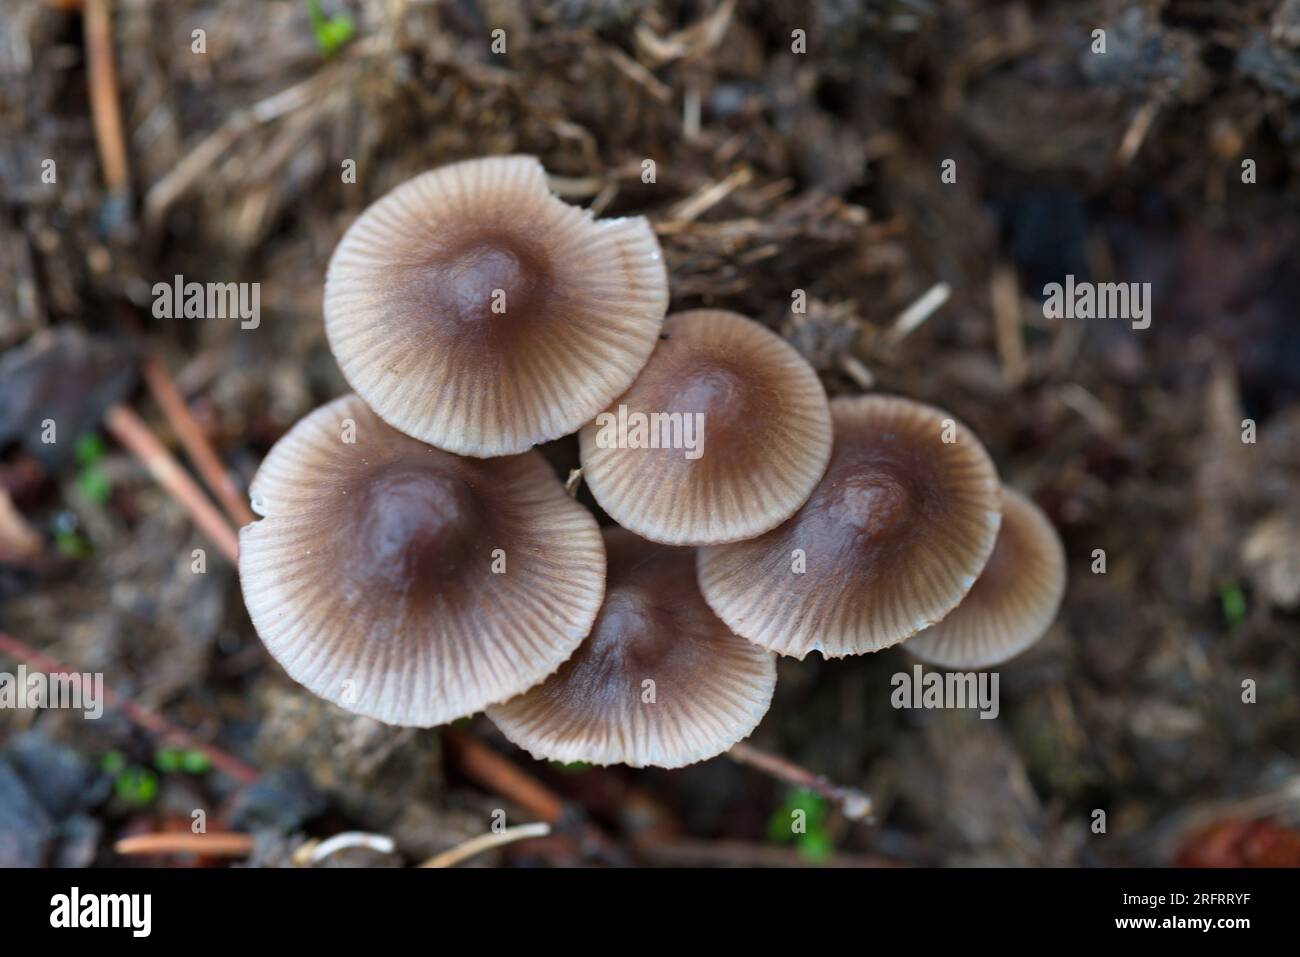 Mycena sp mushroom in the forest. Setas de Mycena sp en el bosque Stock Photo